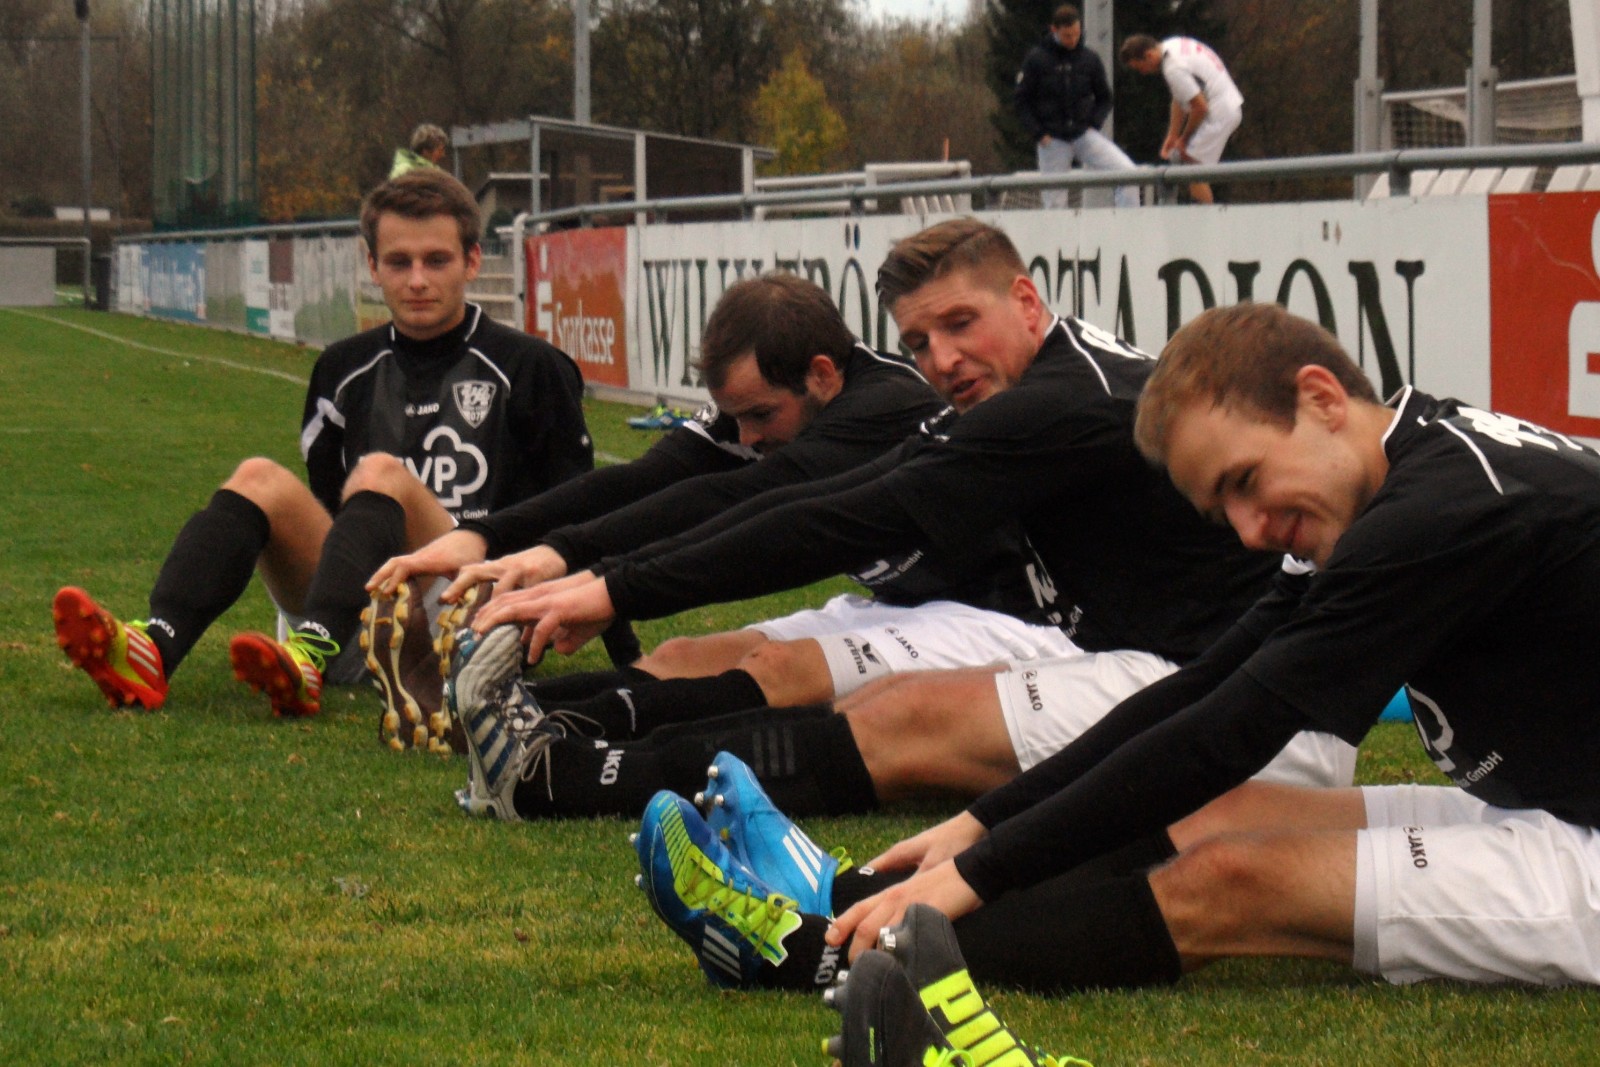 Swozil, Hartmann, Dörner und Rechenberger haben Spaß bei der Übung. Foto: VfL/rz